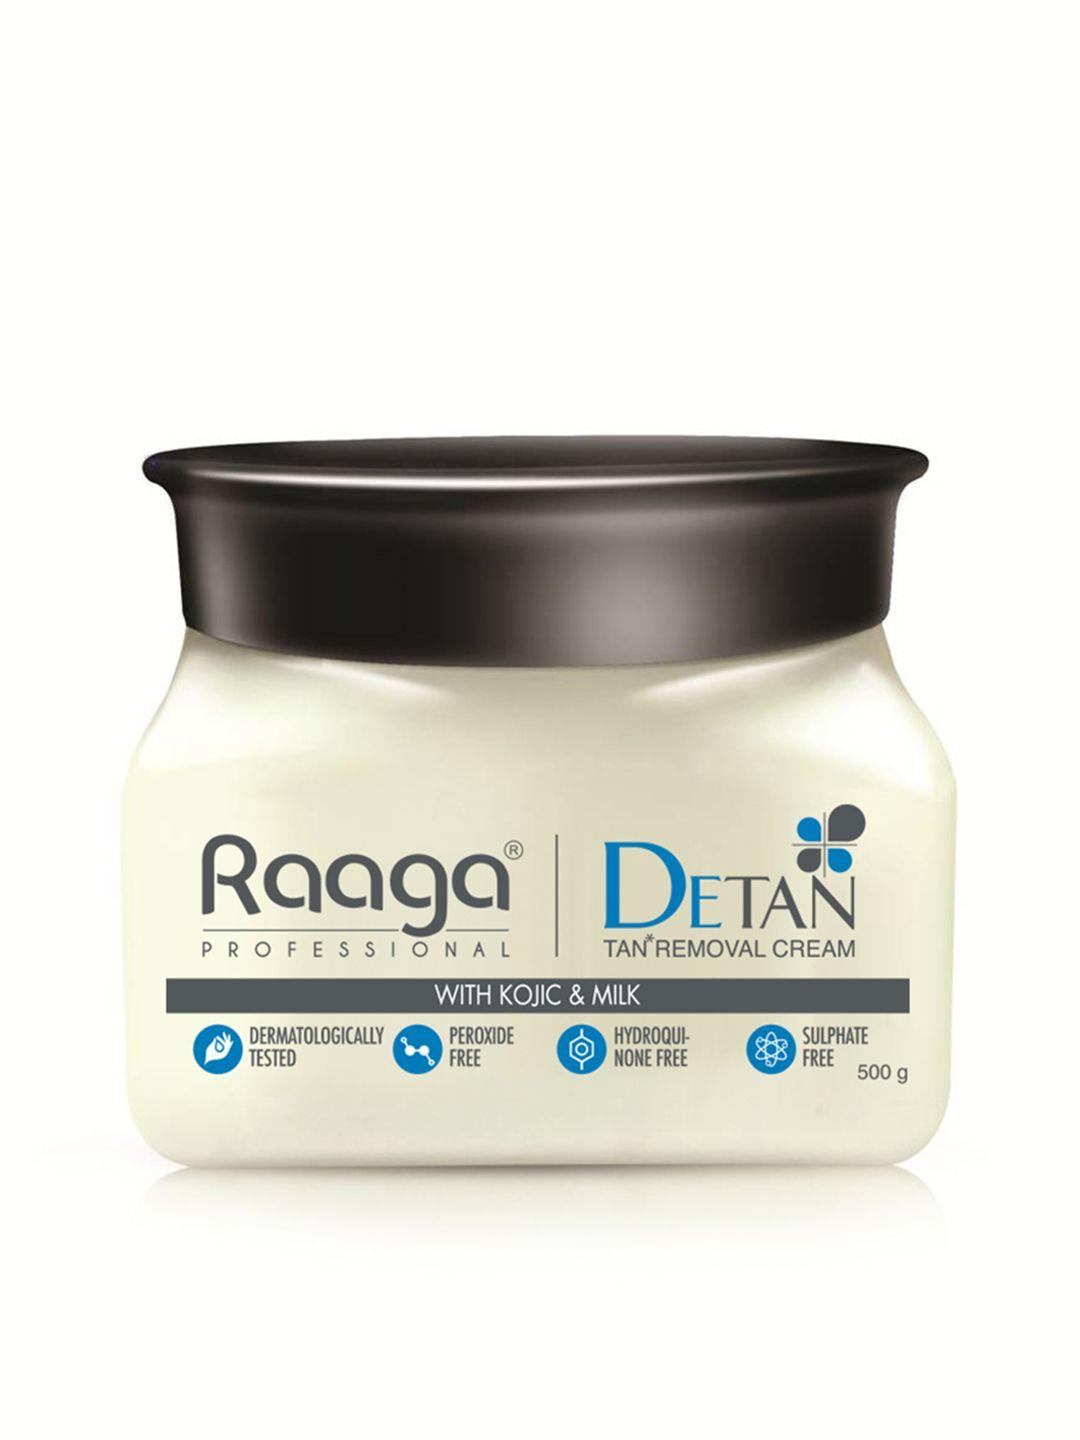 raaga professional de tan with kojic & milk 500 g